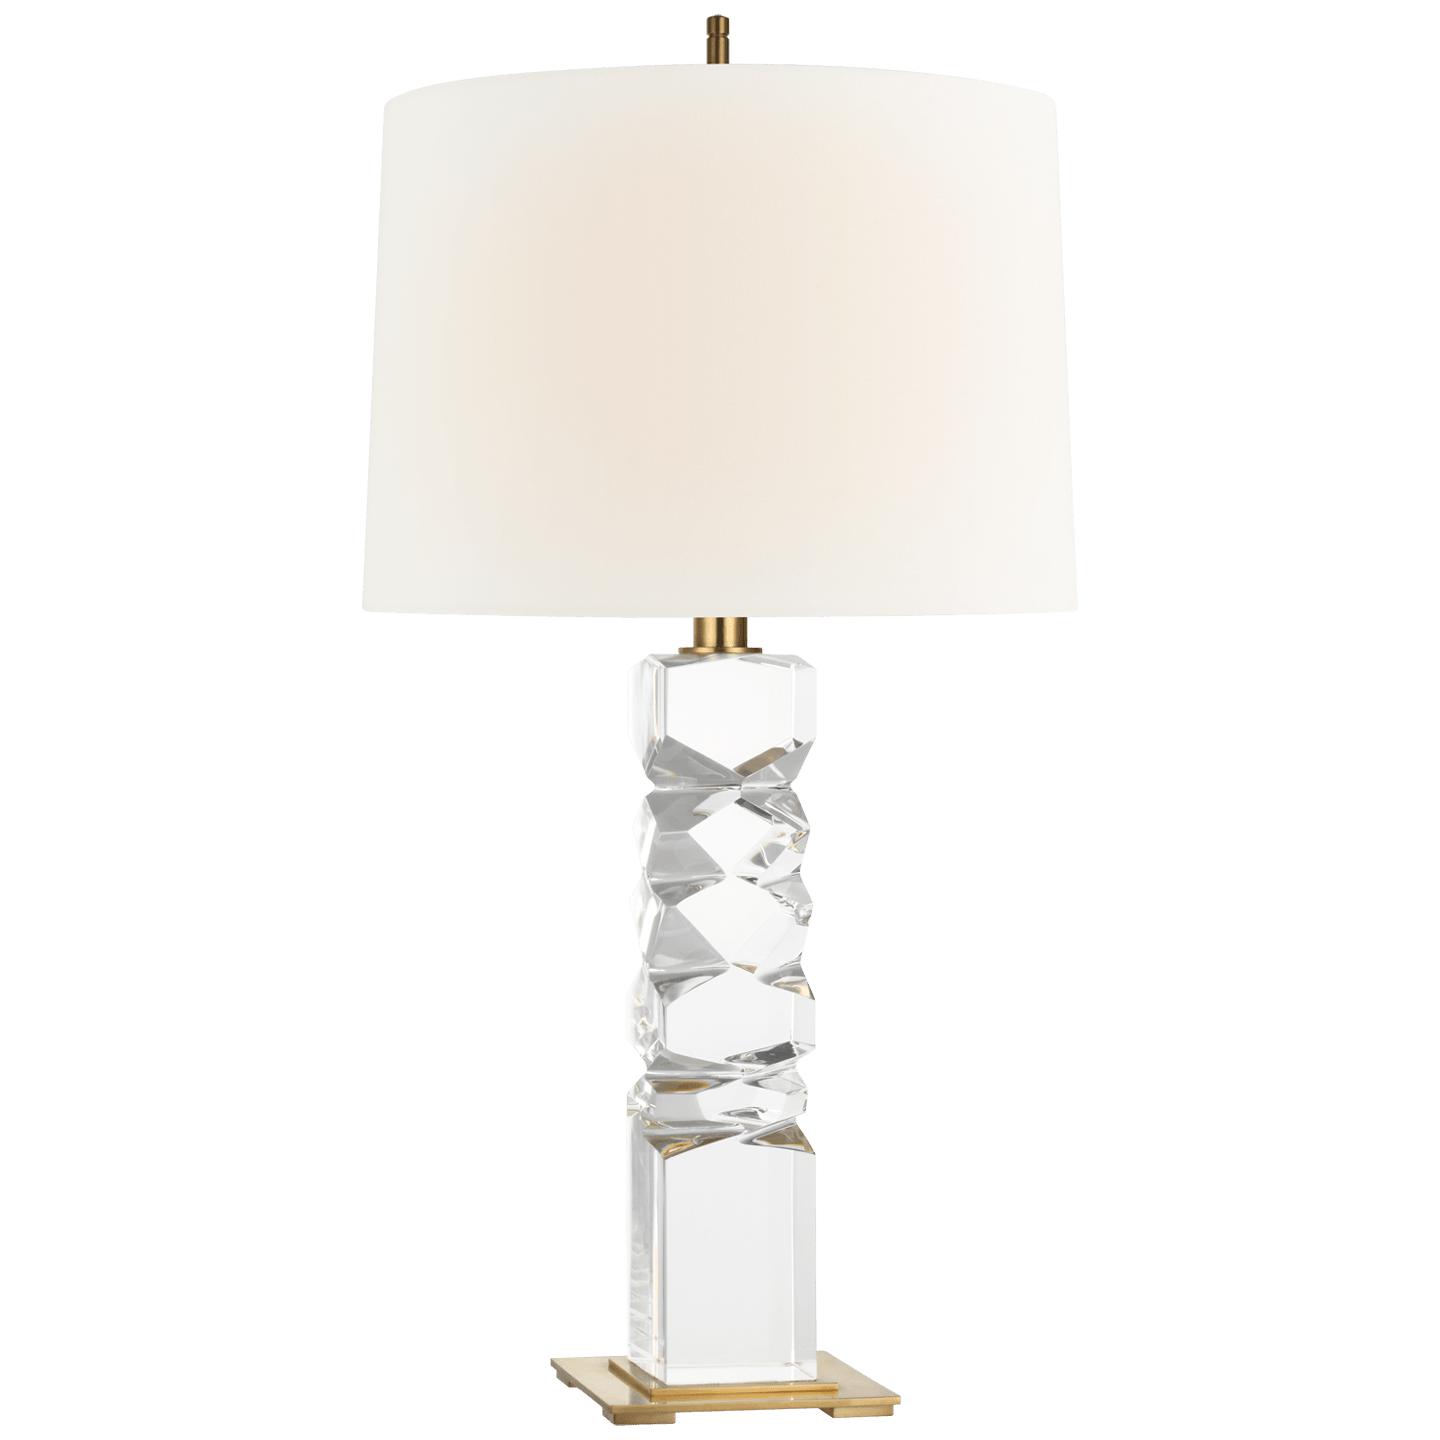 Купить Настольная лампа Argentino Large Table Lamp в интернет-магазине roooms.ru